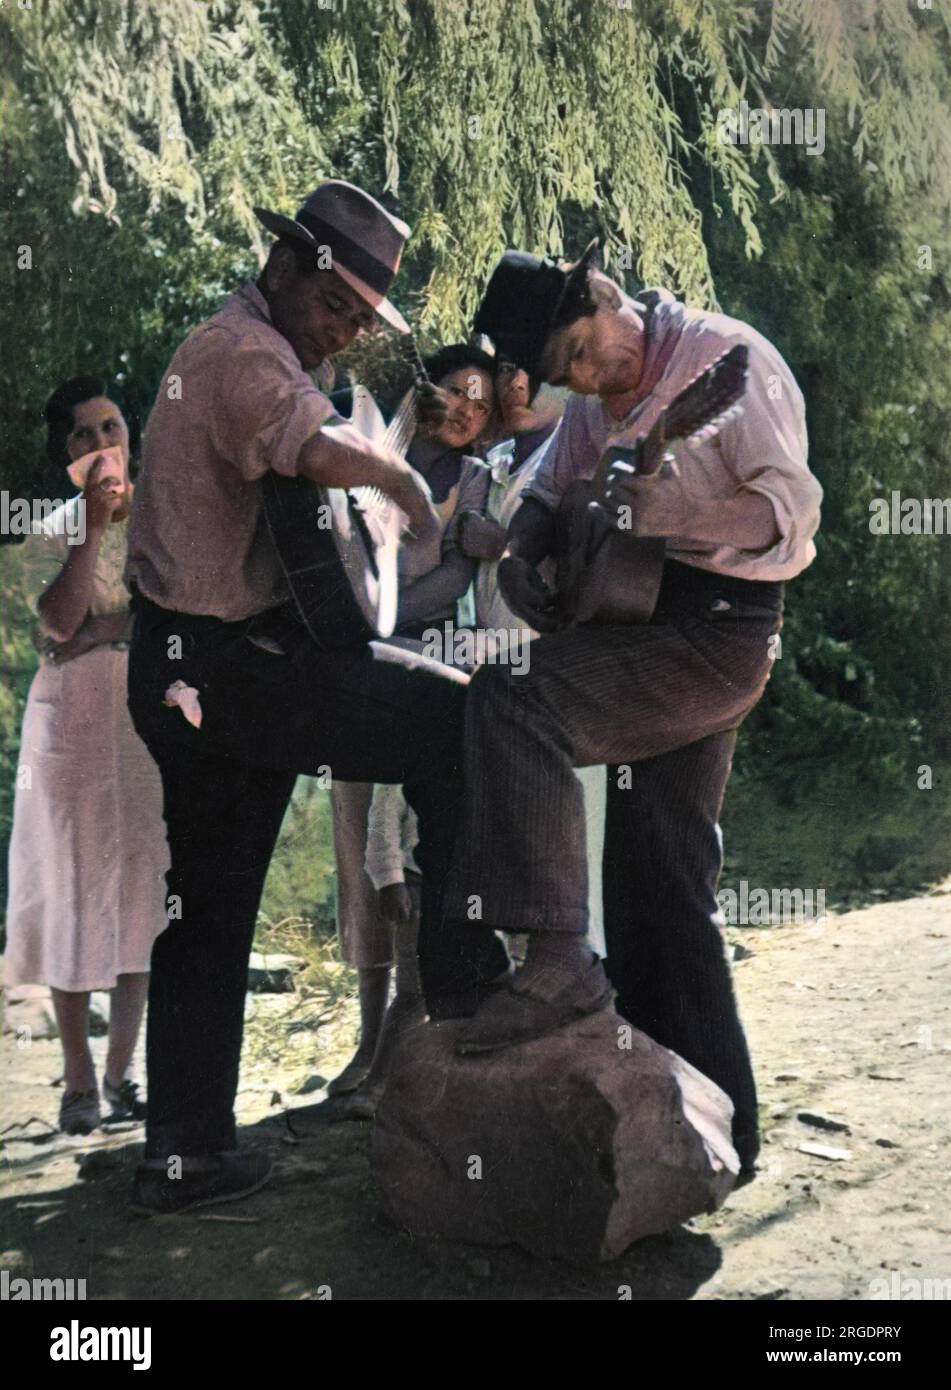 Argentinische Gitarrenspieler treten mit einem Fuß auf einen Stein in eine männliche Pose, während sie zusammen ein Duett spielen, während sich ihre schüchternen Frauen vor der Kamera, Südamerika, verstecken. Stockfoto